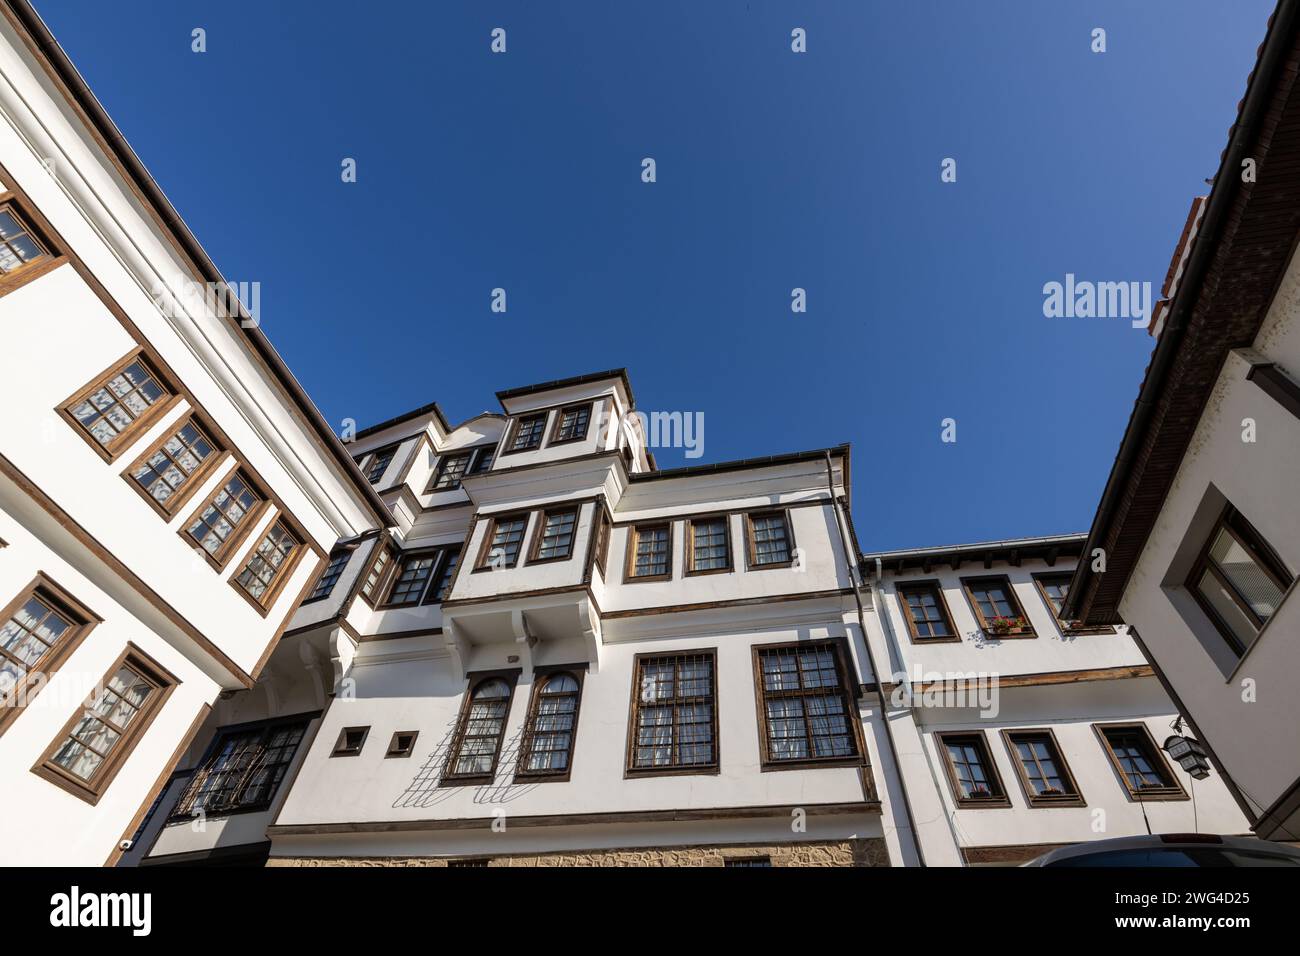 Traditionelle Architektur des alten Hauses in Ohrid in Nordmakedonien, mit Holzfenstern und weißer Fassade. Aufgenommen an einem sonnigen Tag mit blauem Himmel. Stockfoto